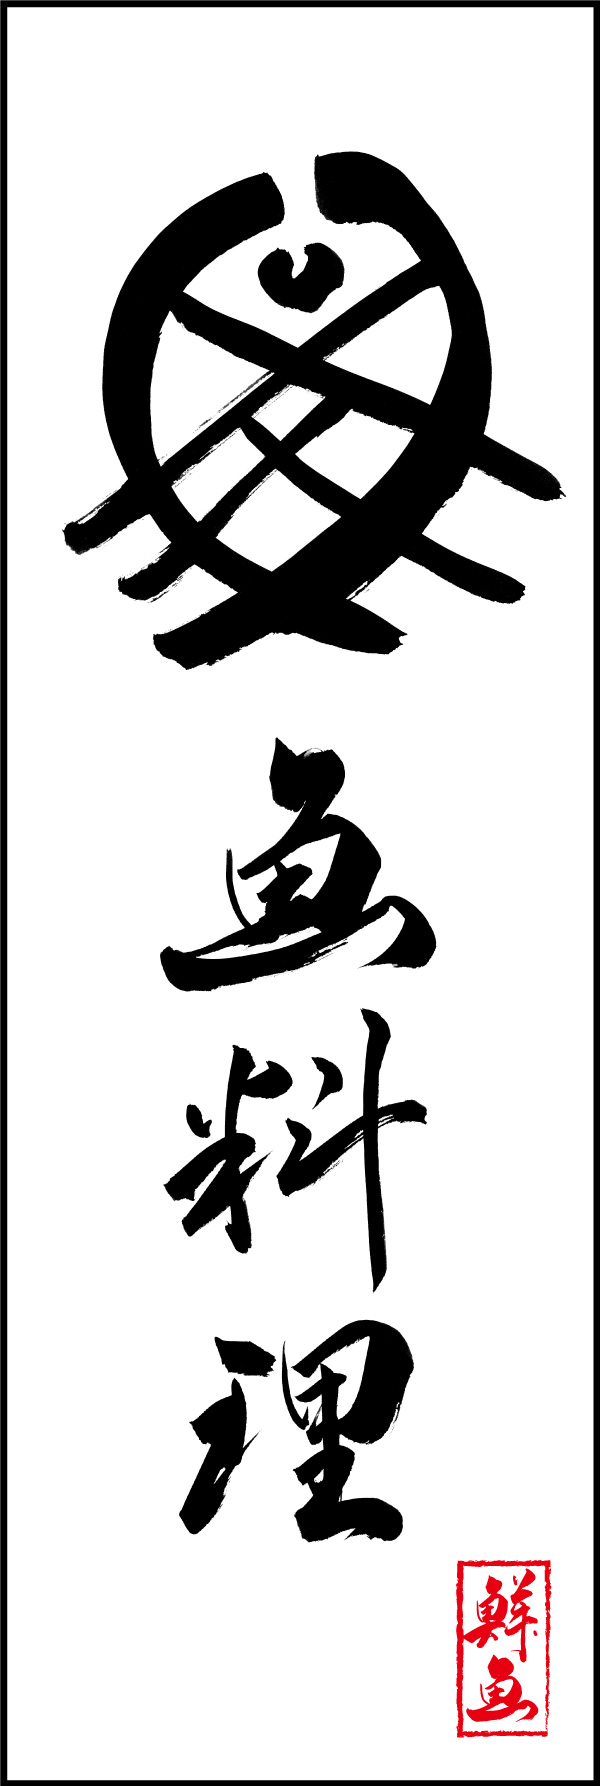 魚料理 156_04 「魚料理」の幟です。江戸文字職人 加藤木大介氏による、手書きの筆文字です。完全書き下ろし、唯一無二の幟は当店だけのオリジナル商品です。（Y.M）